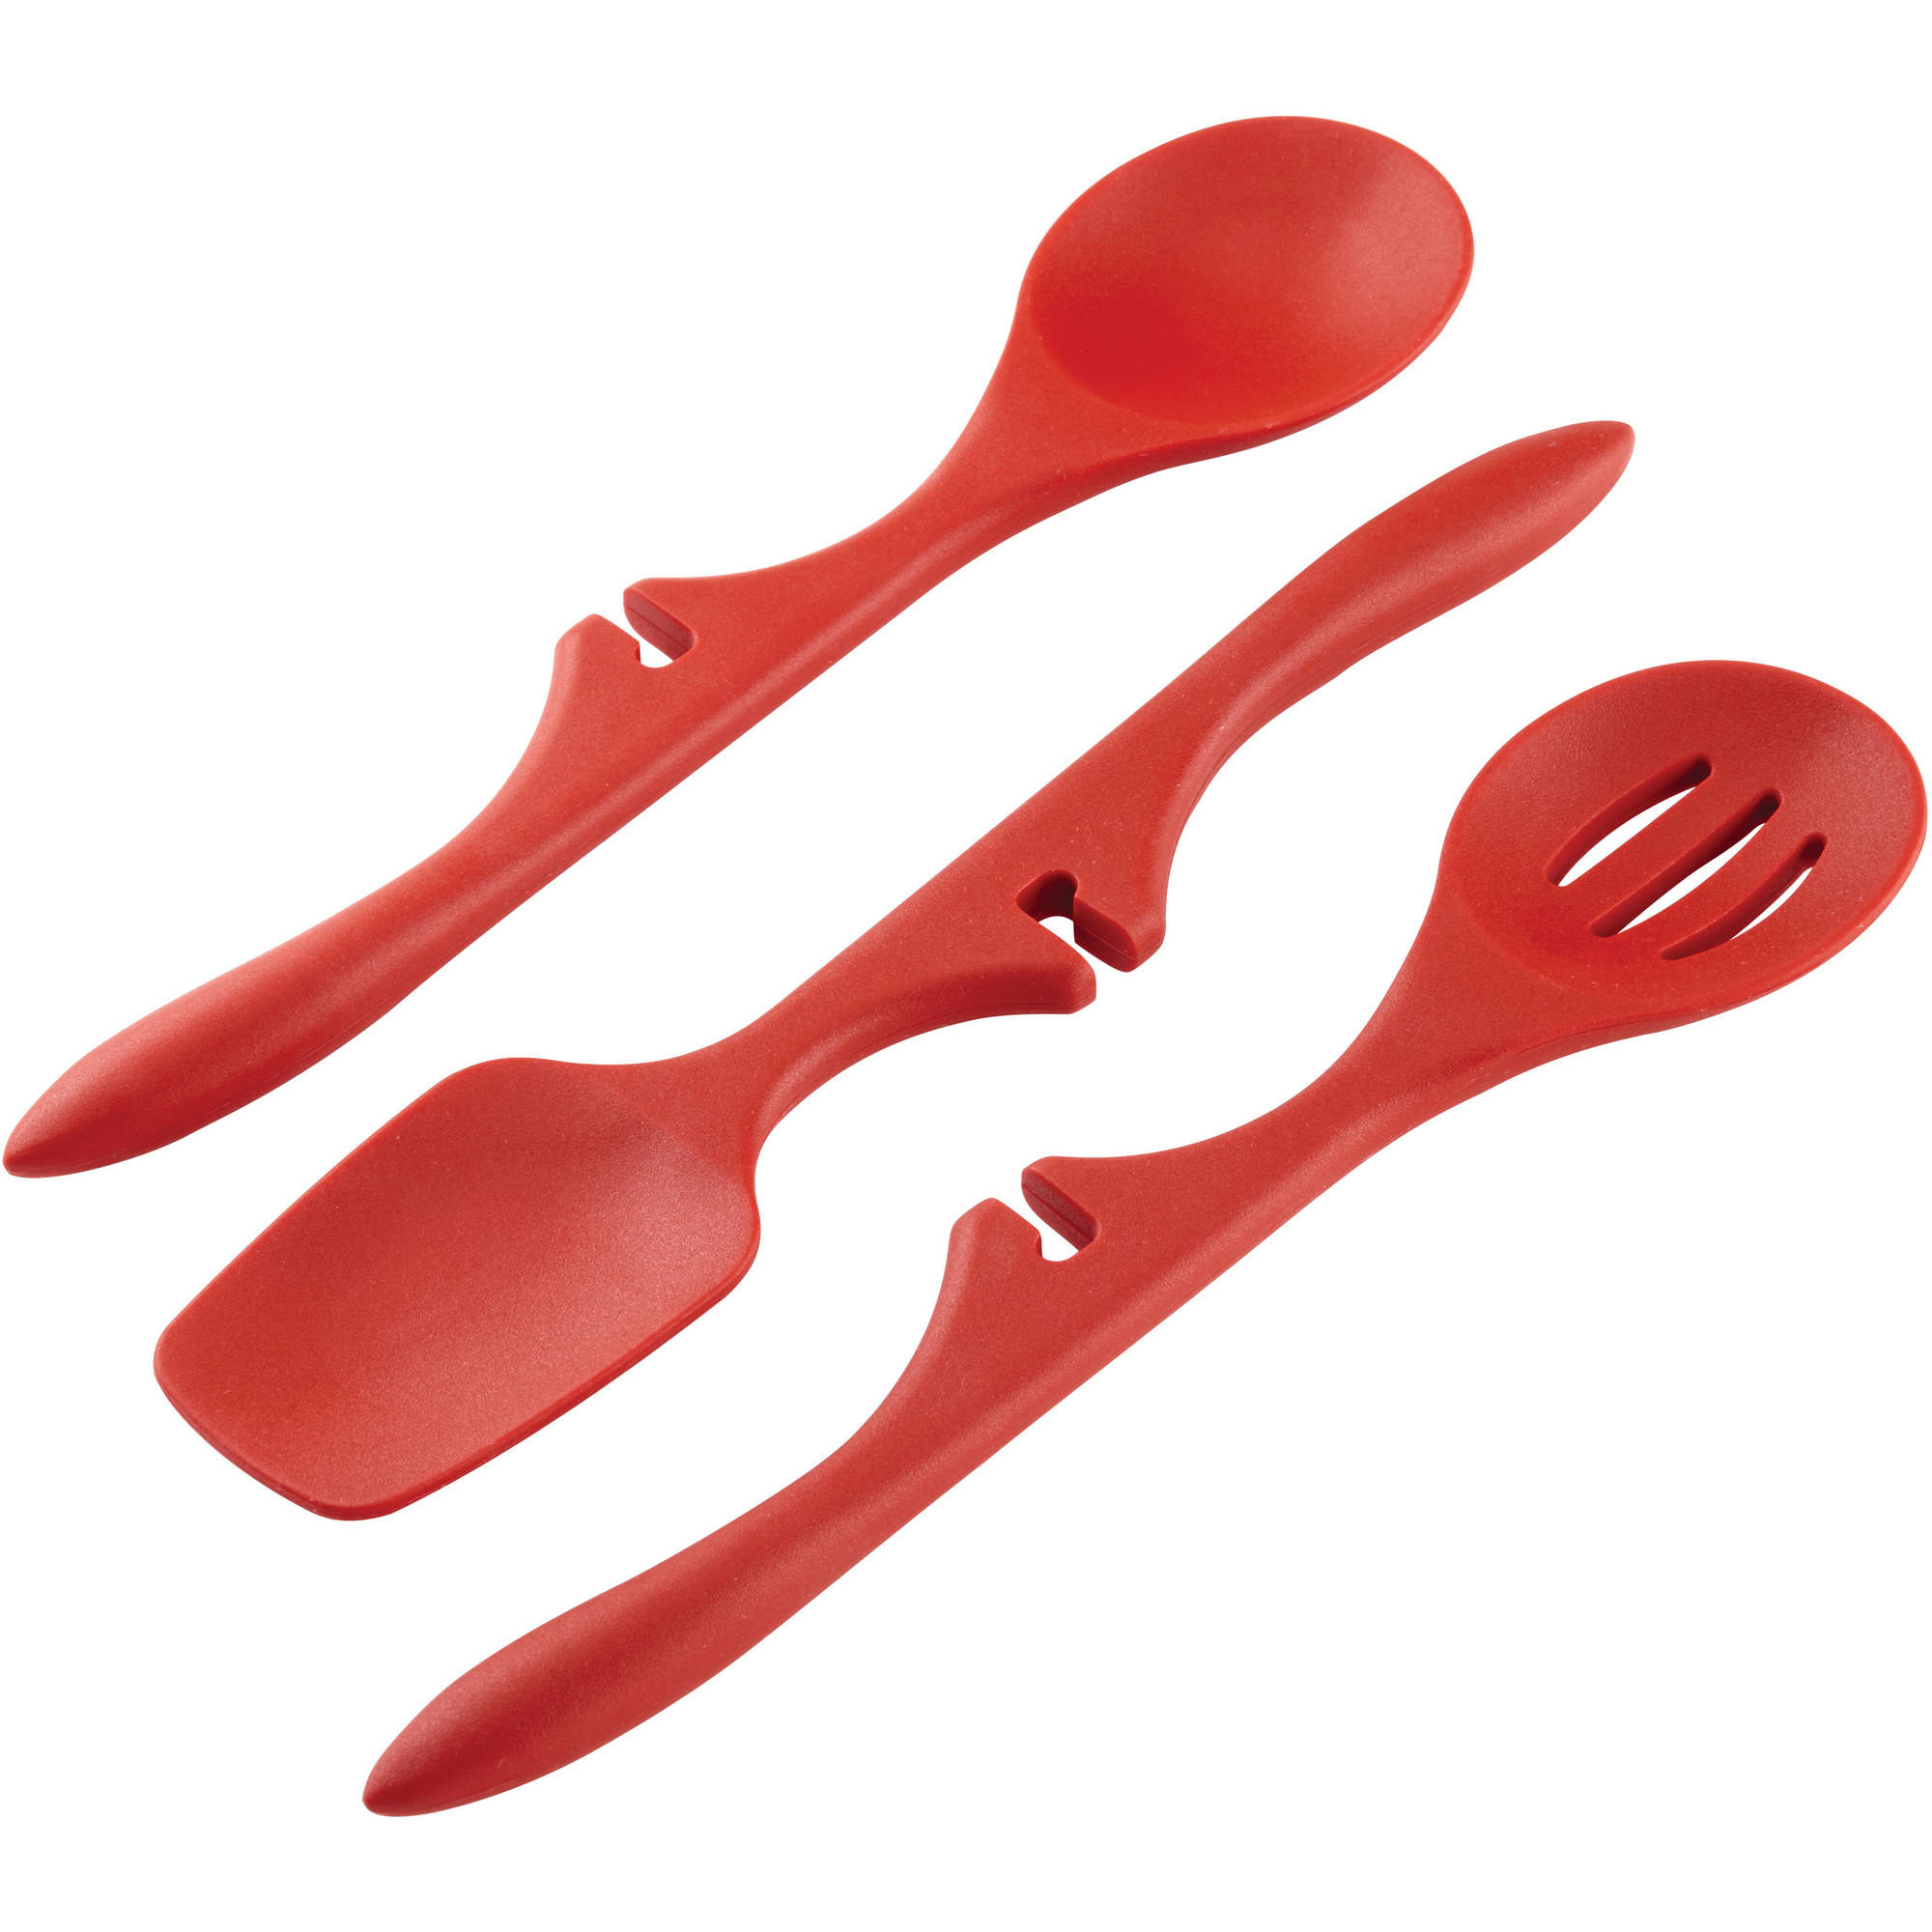 The red utensil set